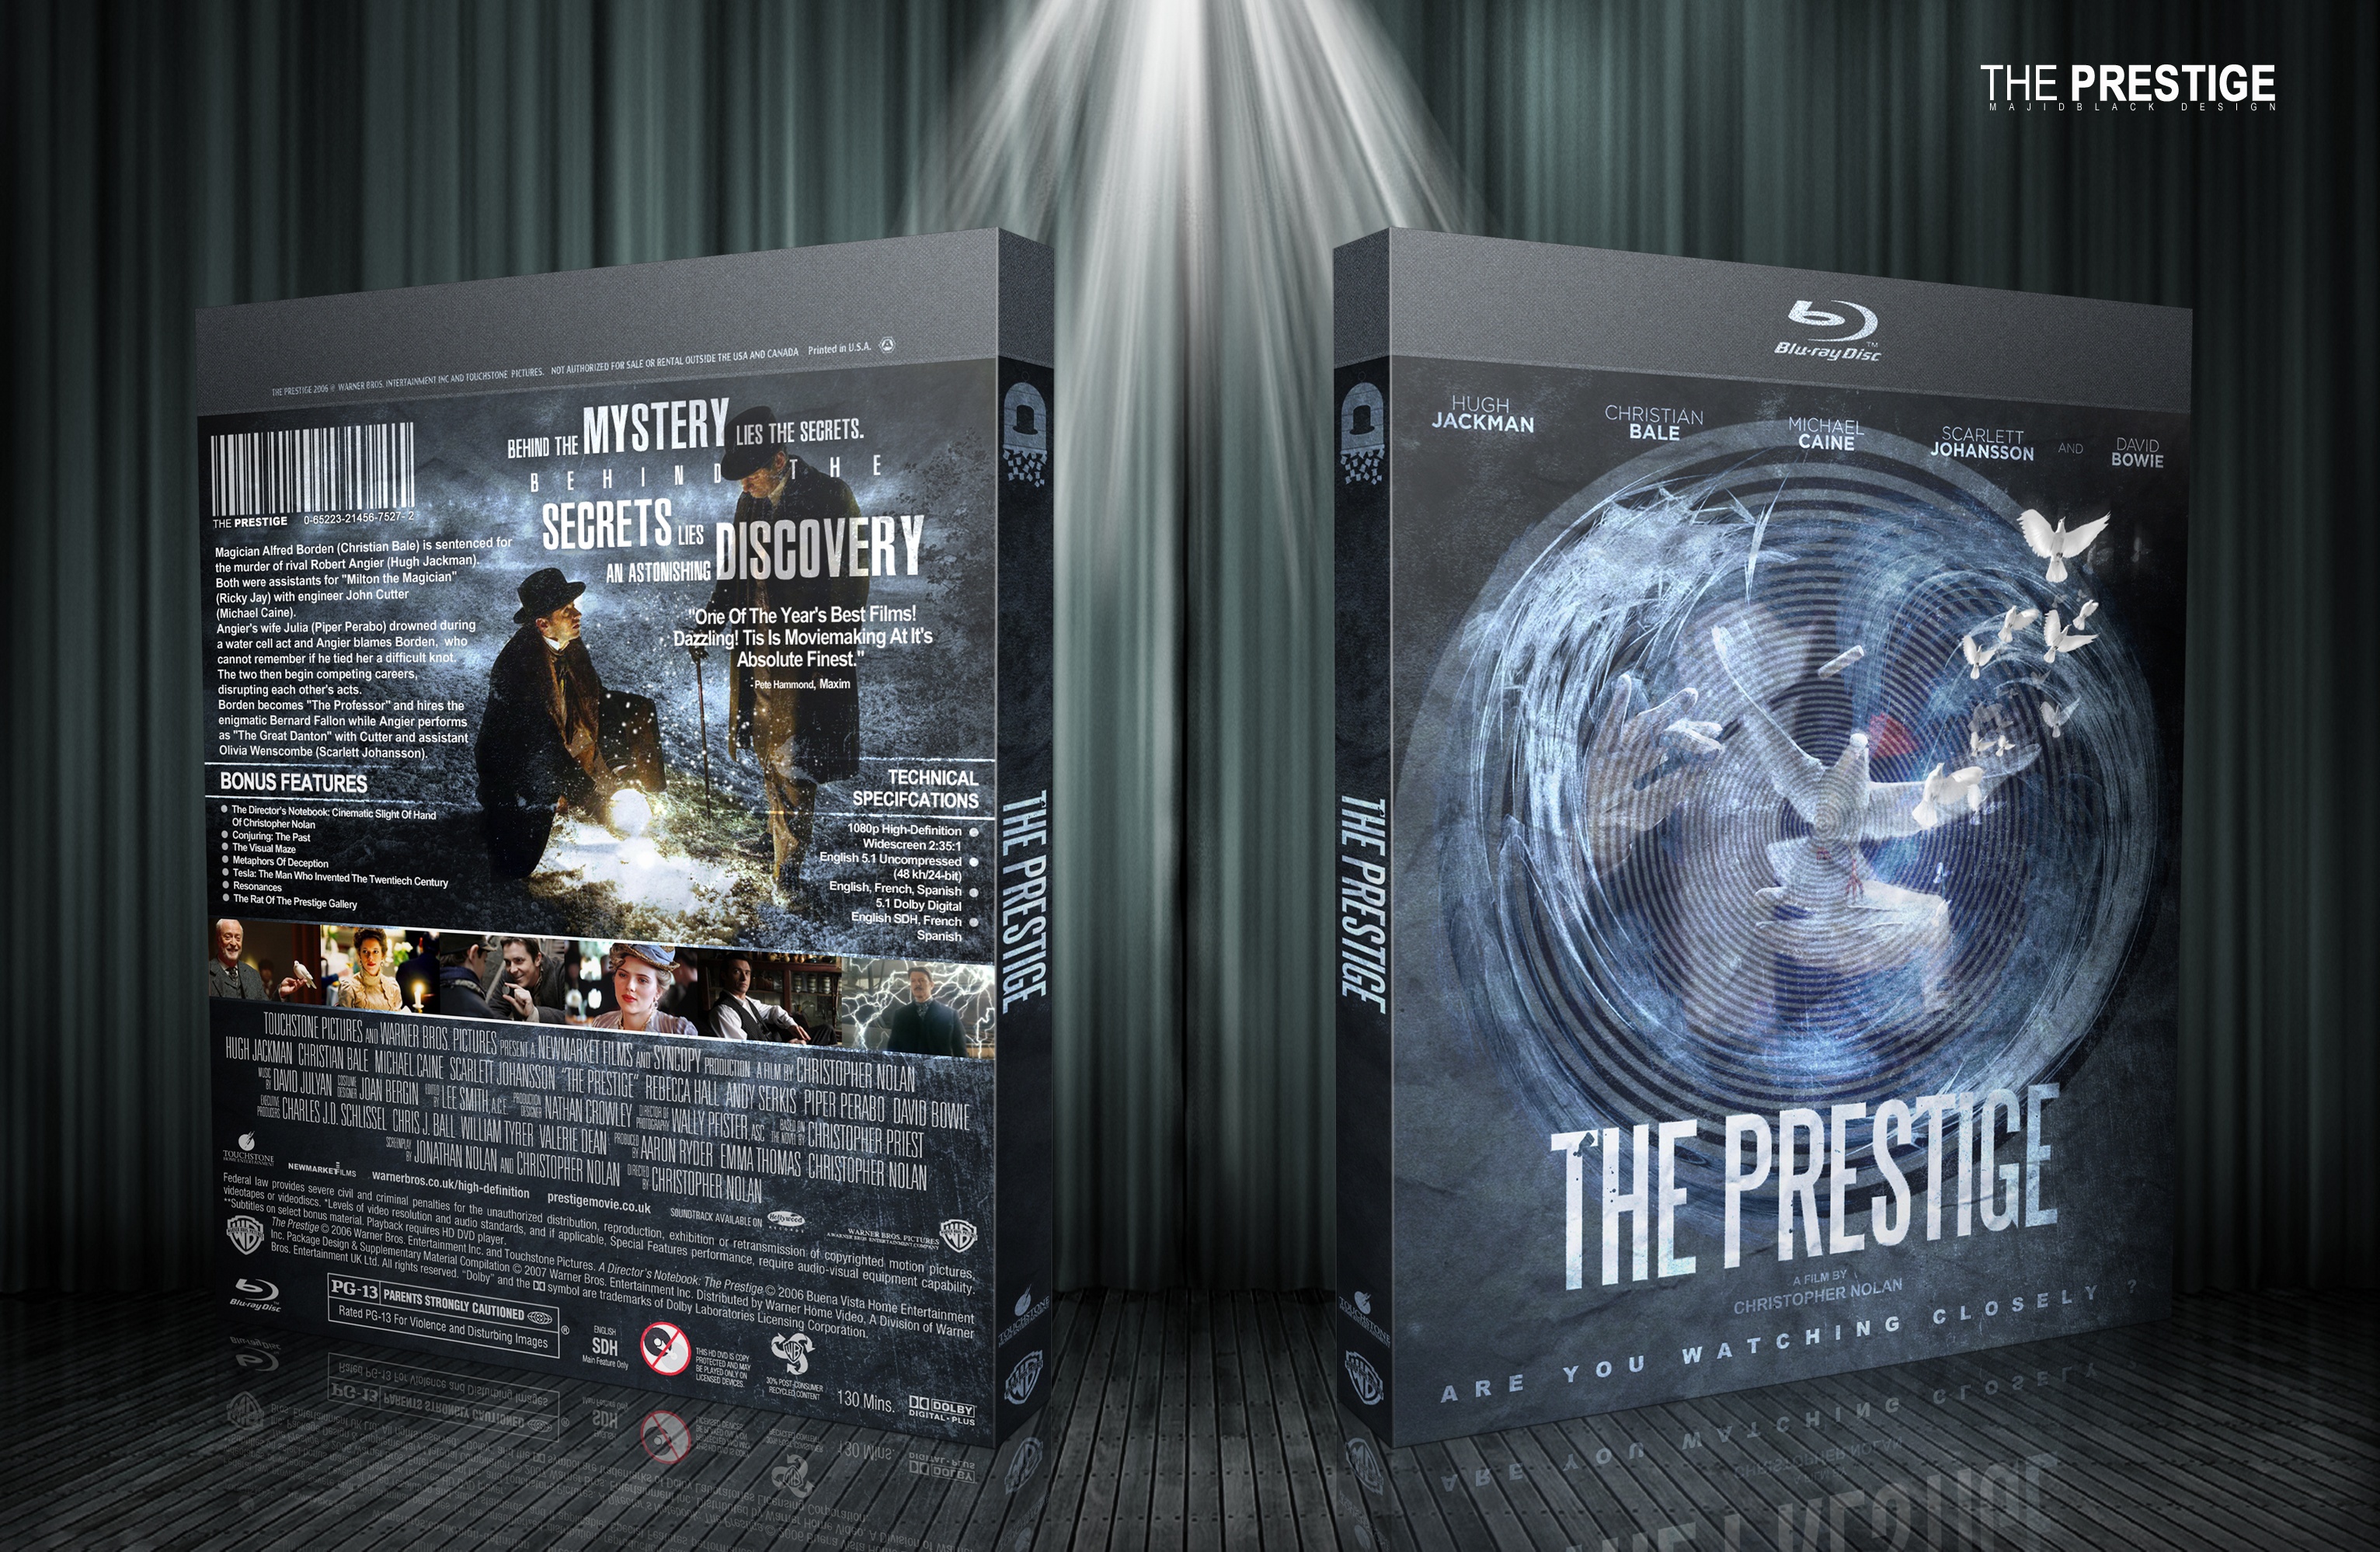 The Prestige box cover